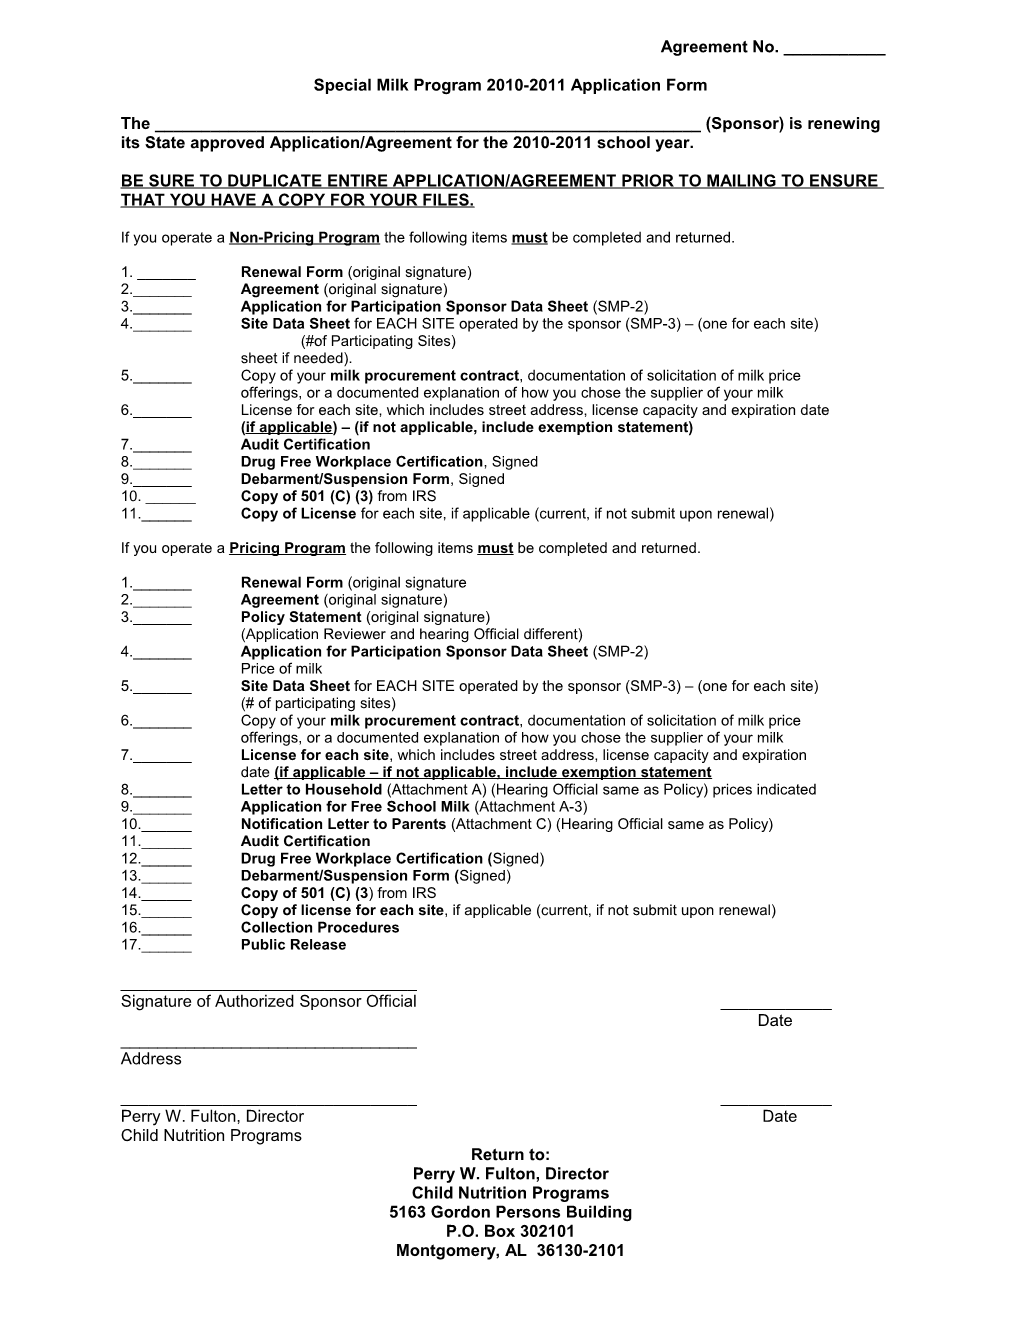 Special Milk Program 2010-2011 Application Form